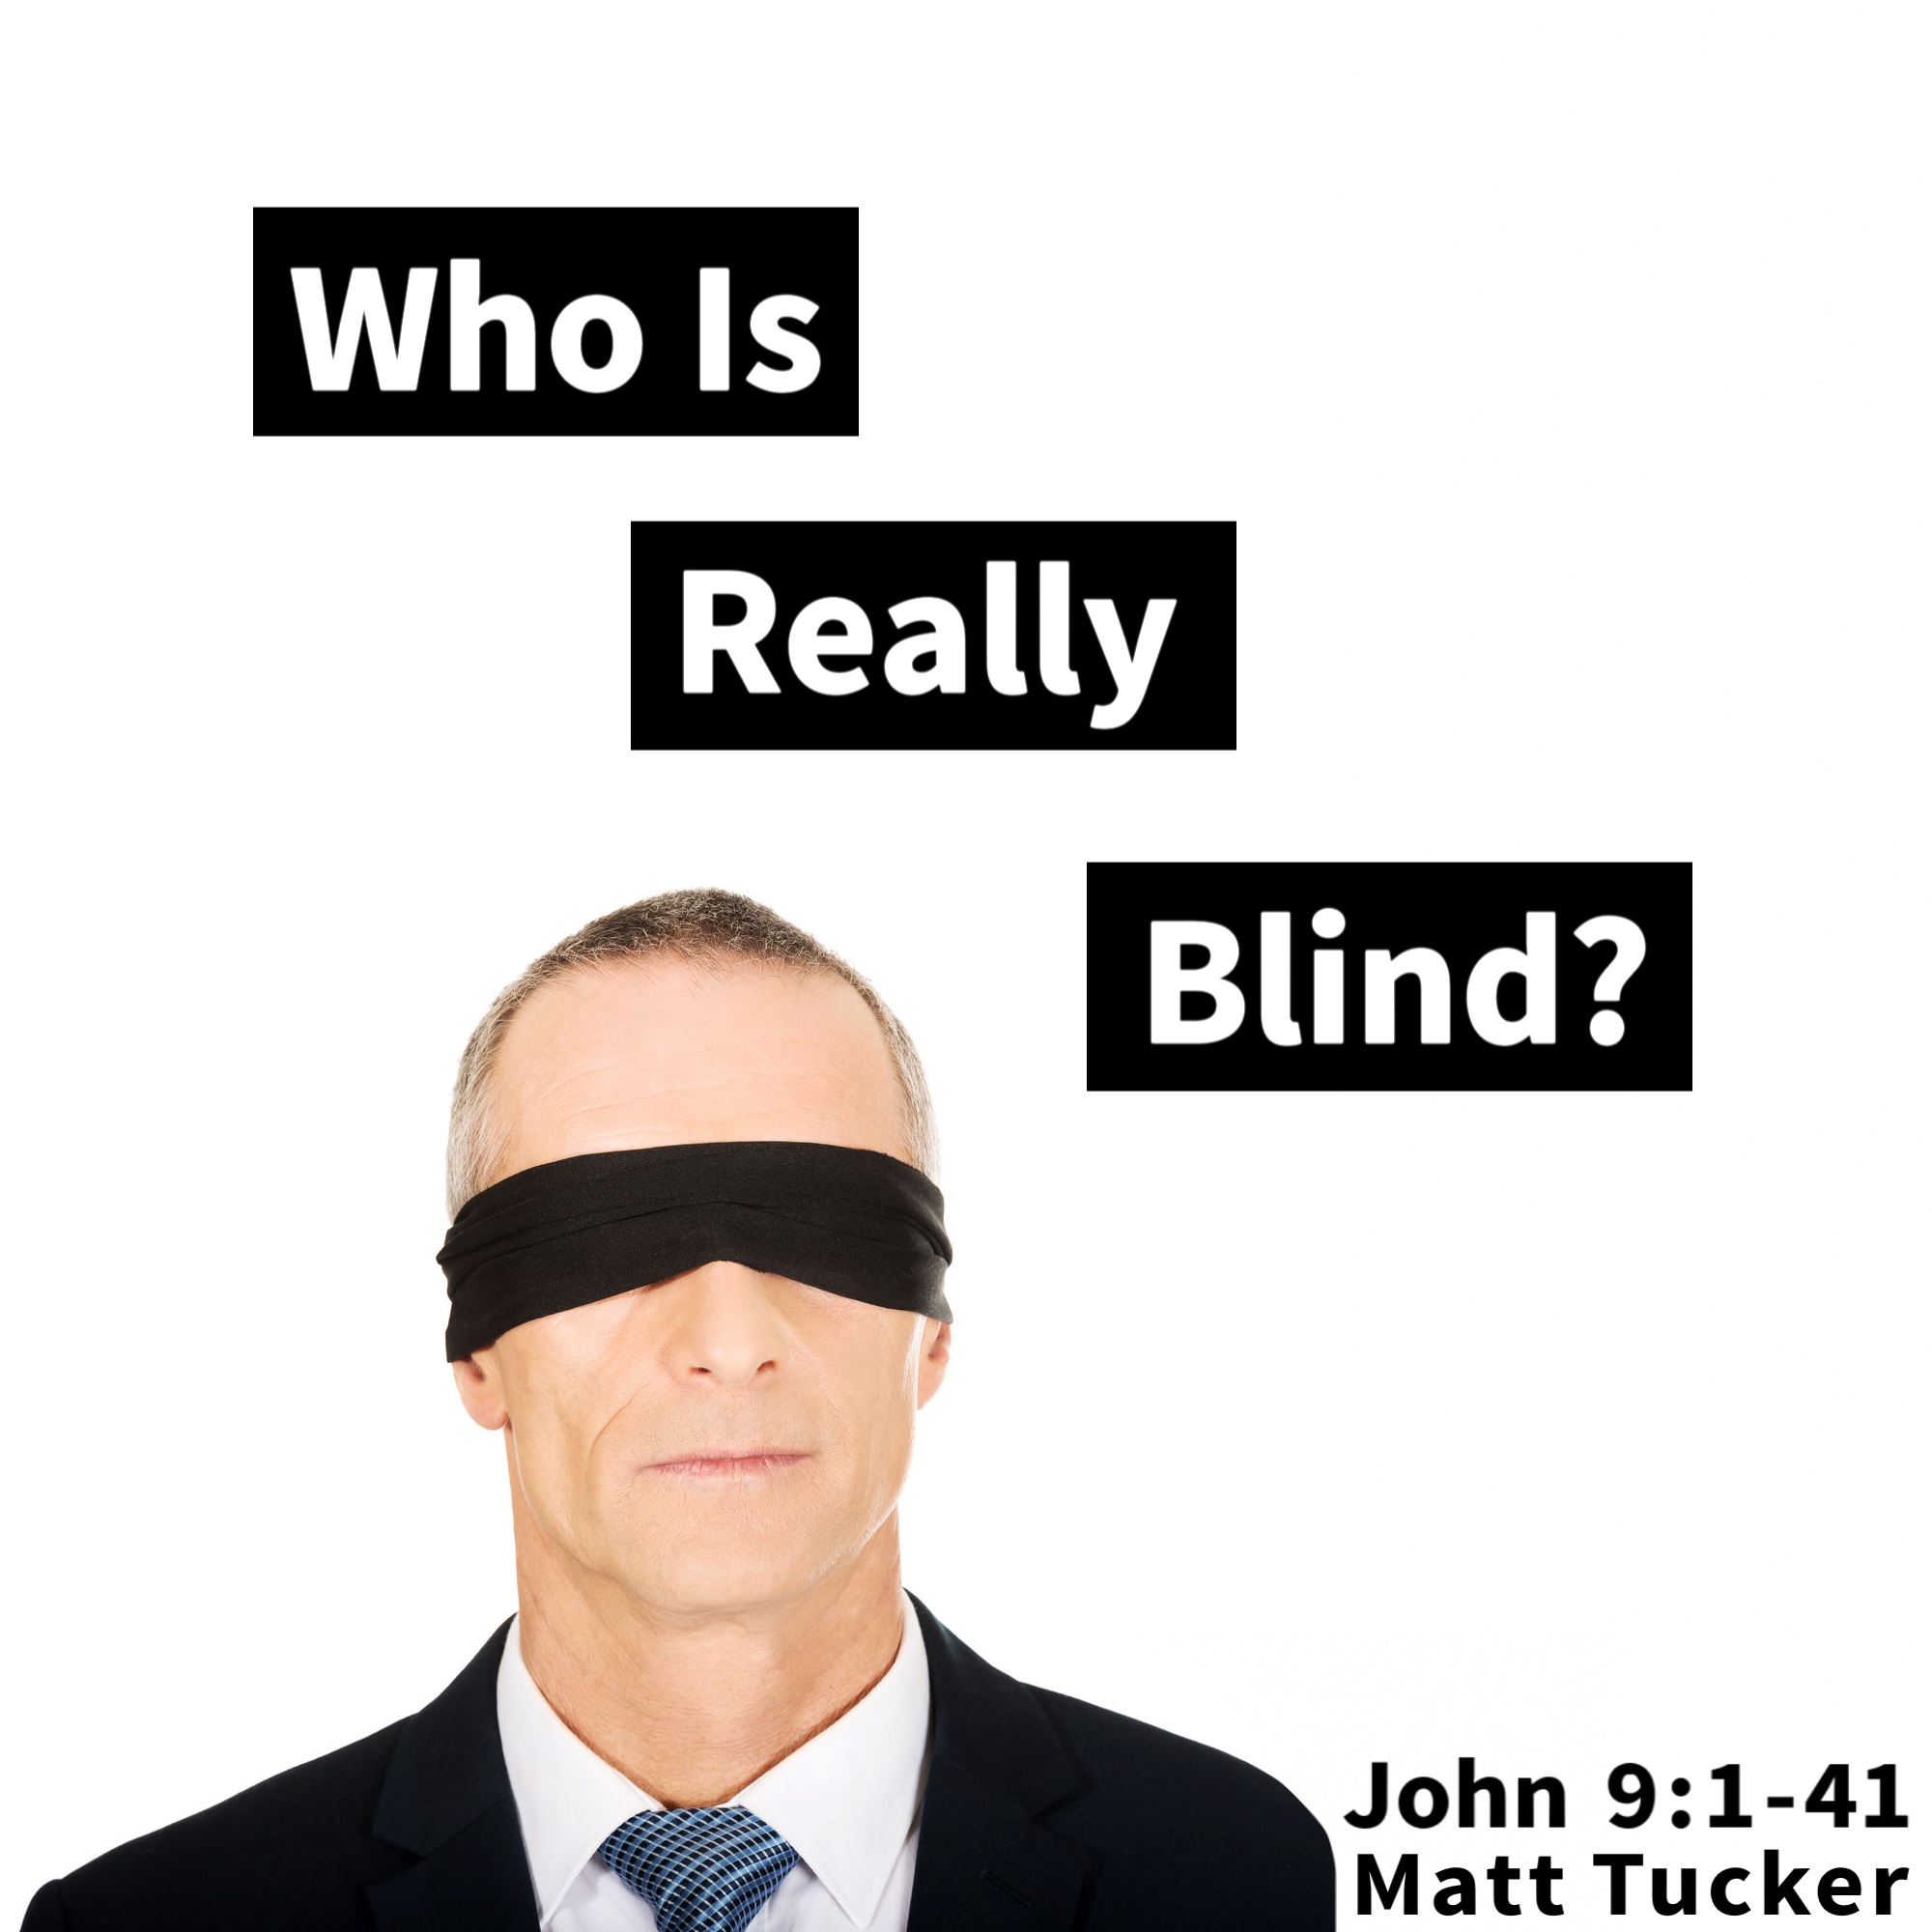 John 9:1-41 